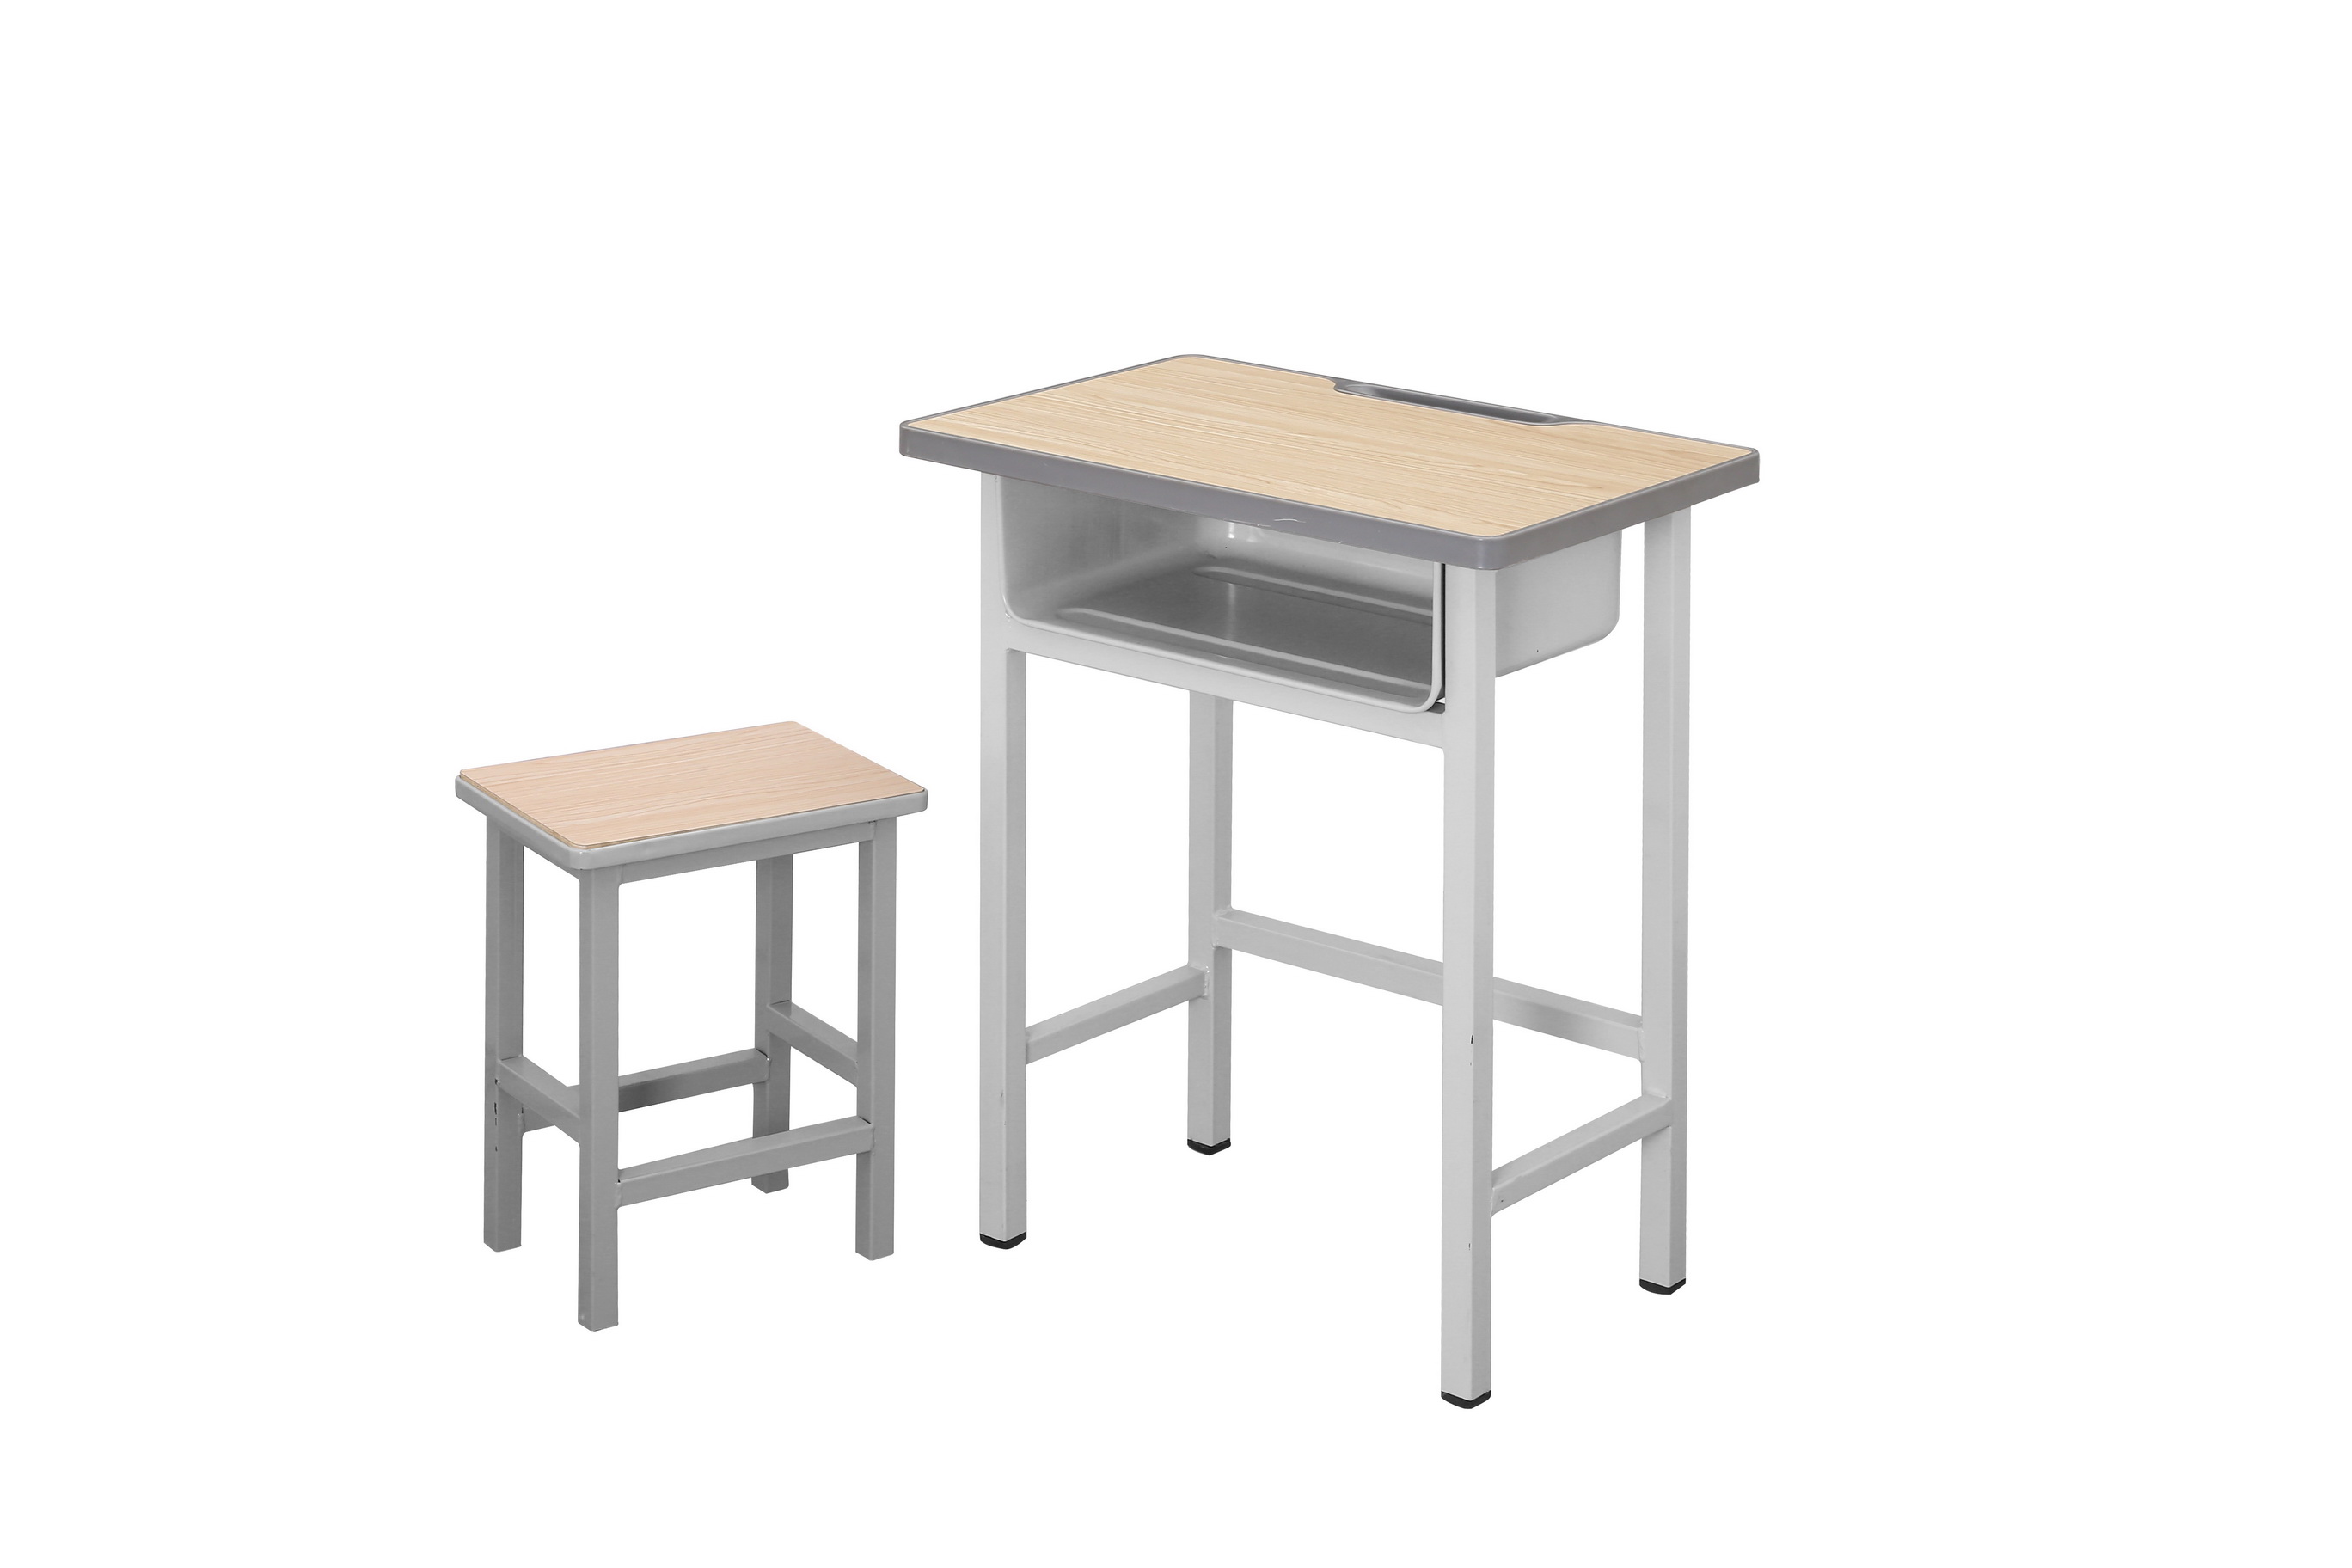 学生课桌椅 学生床 学校家具 如何挑选课桌椅 学生课桌椅价格